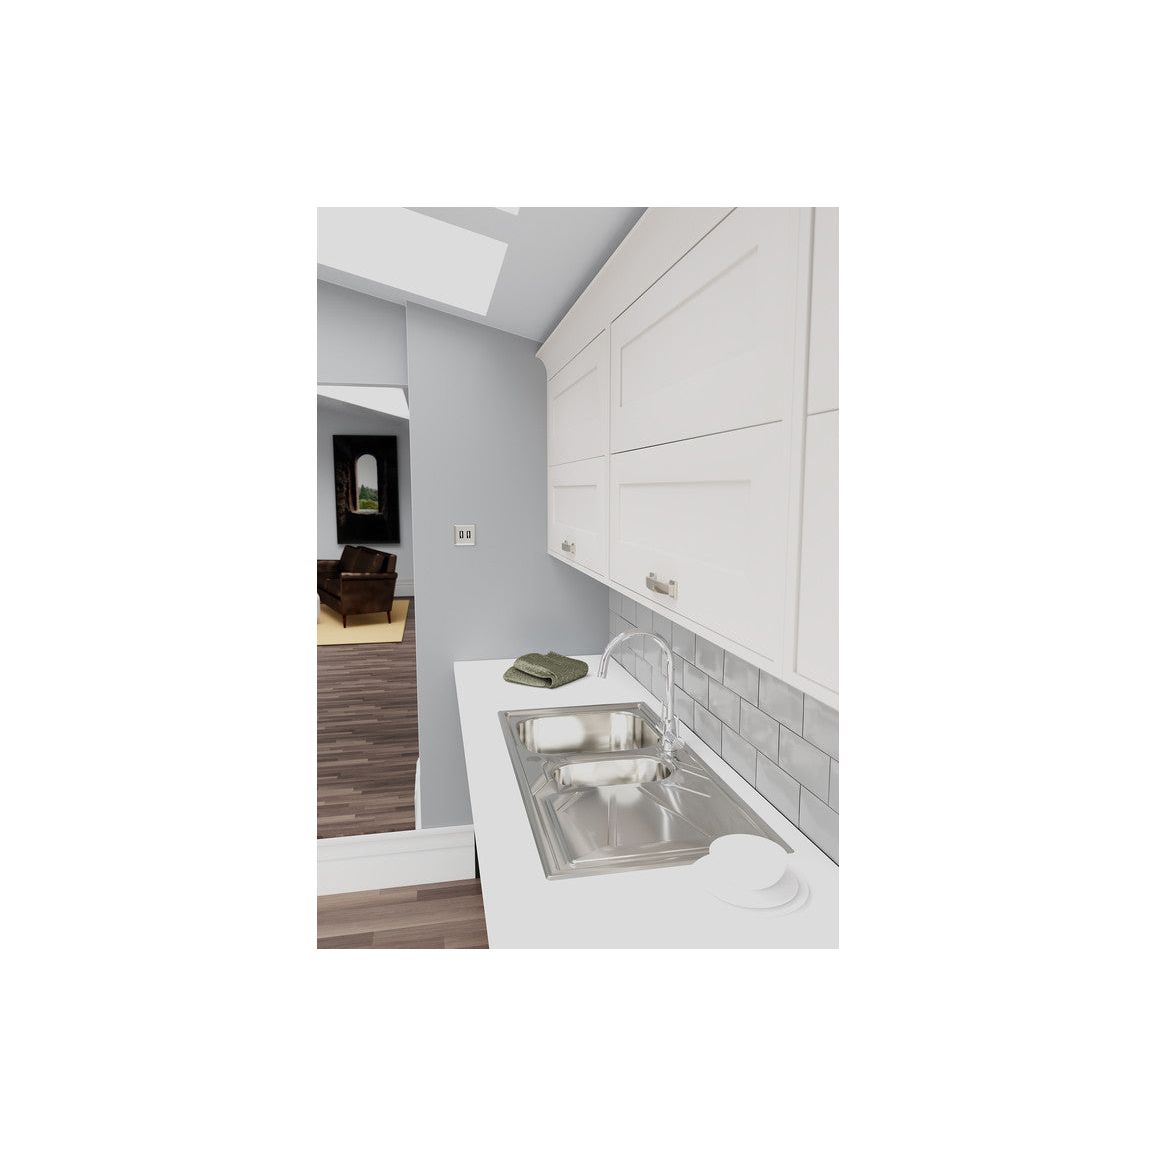 Abode Oriel 1.5B Inset Black Granite Sink & Nexa Tap Pack